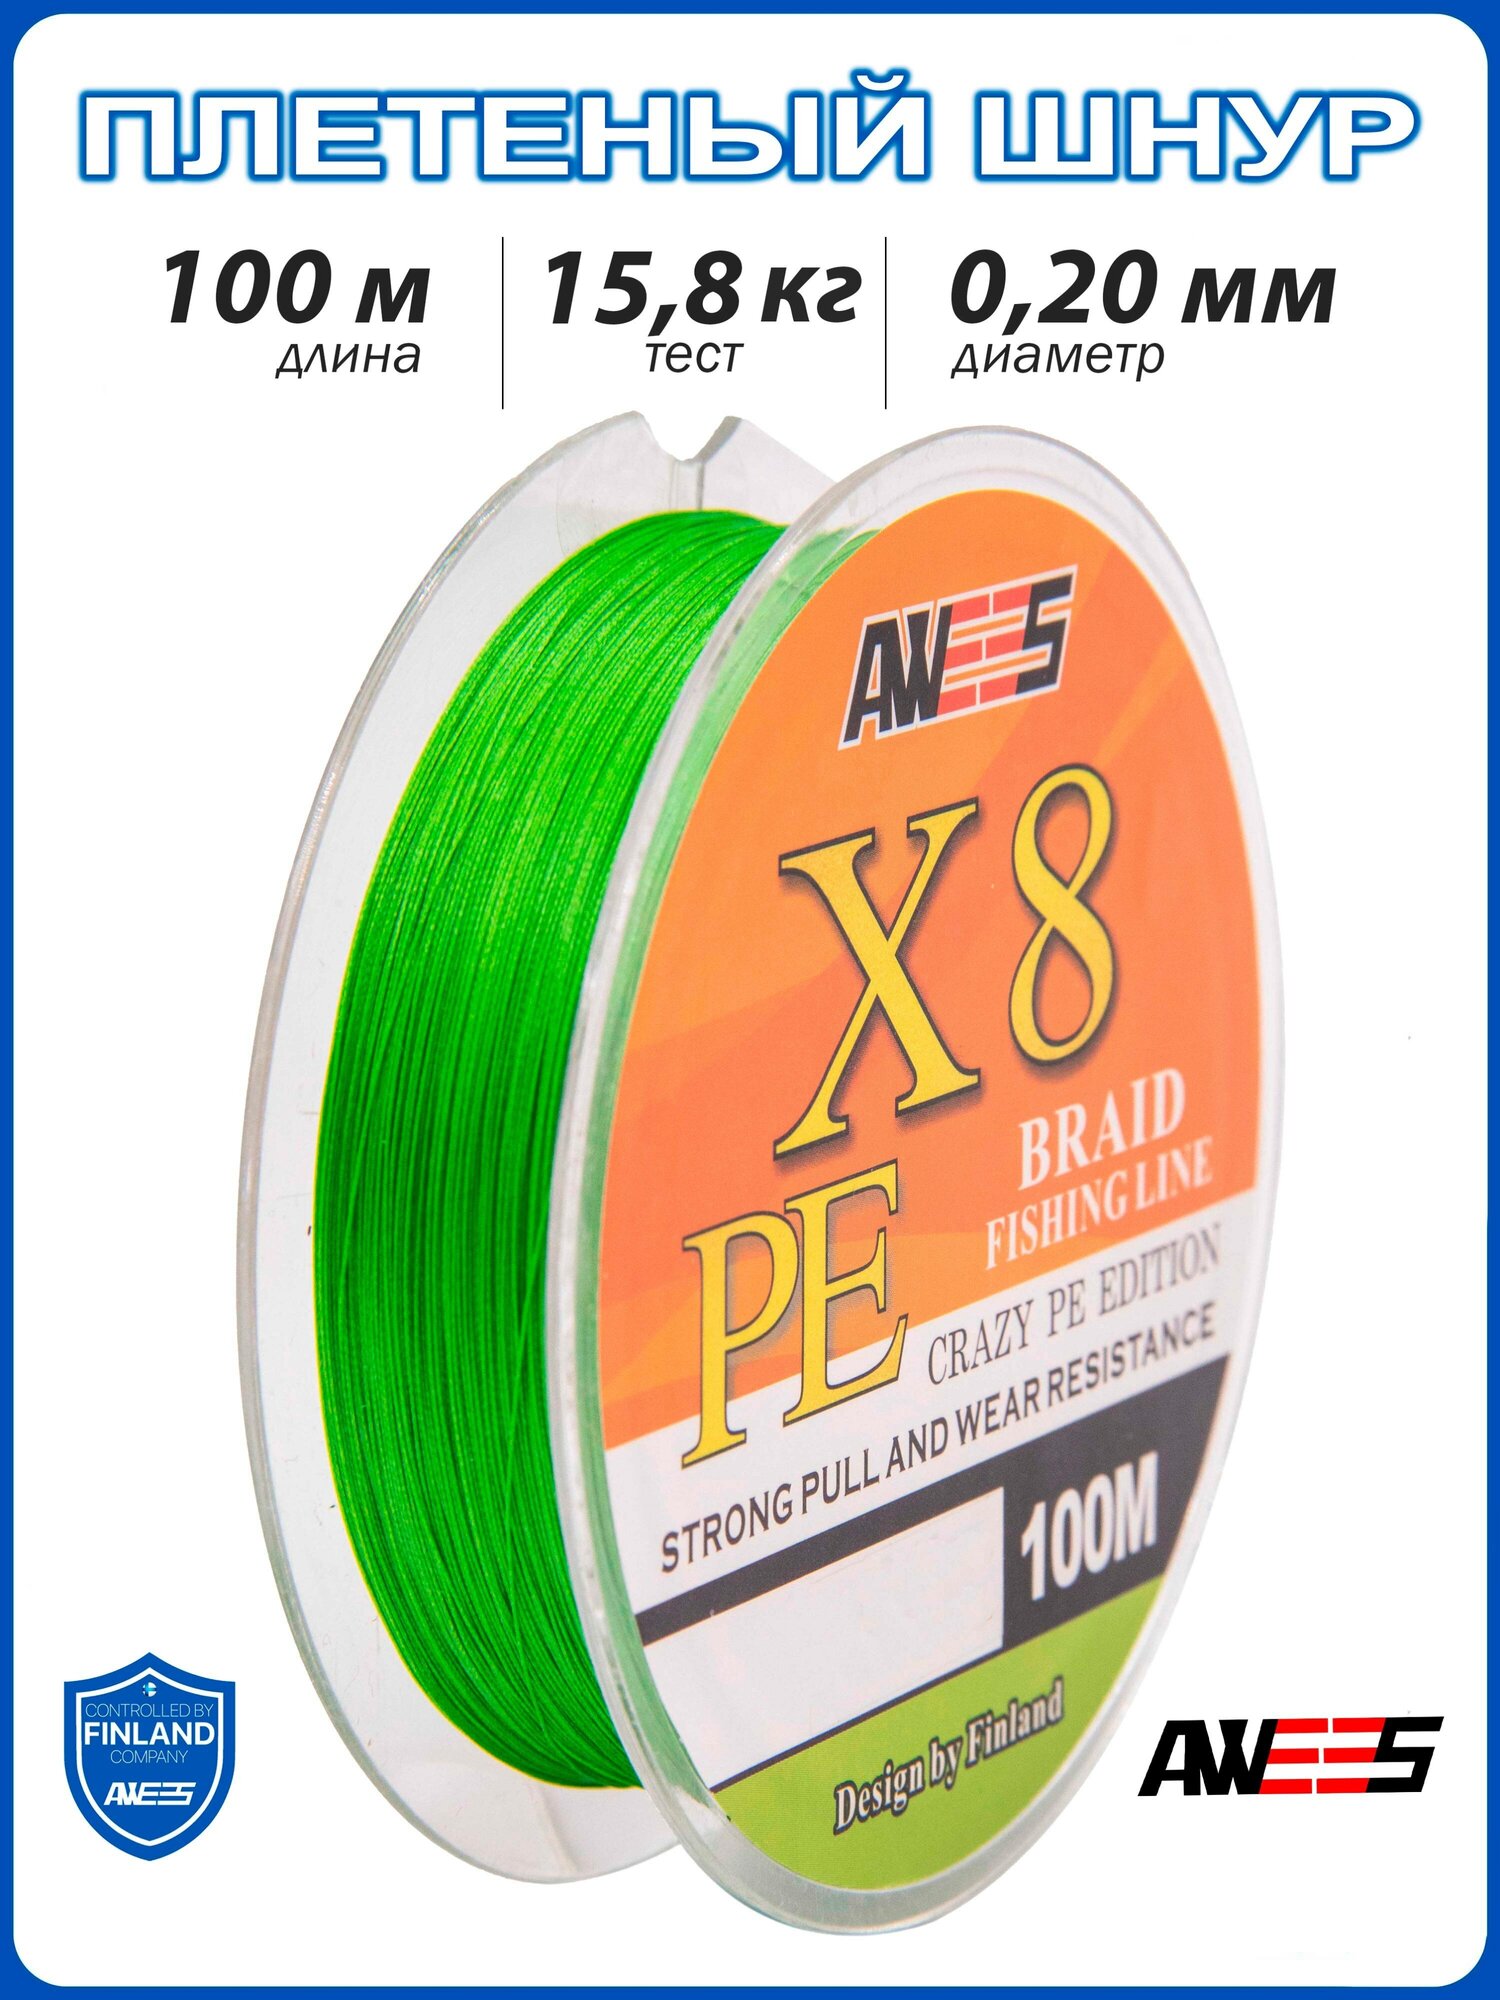 Плетеный шнур 8-жильный AWEES PE-X8 0.20, тест 15.8 кг, 100 м, зелёный/плетёнка/леска плетеная/леска/шнур для рыбалки